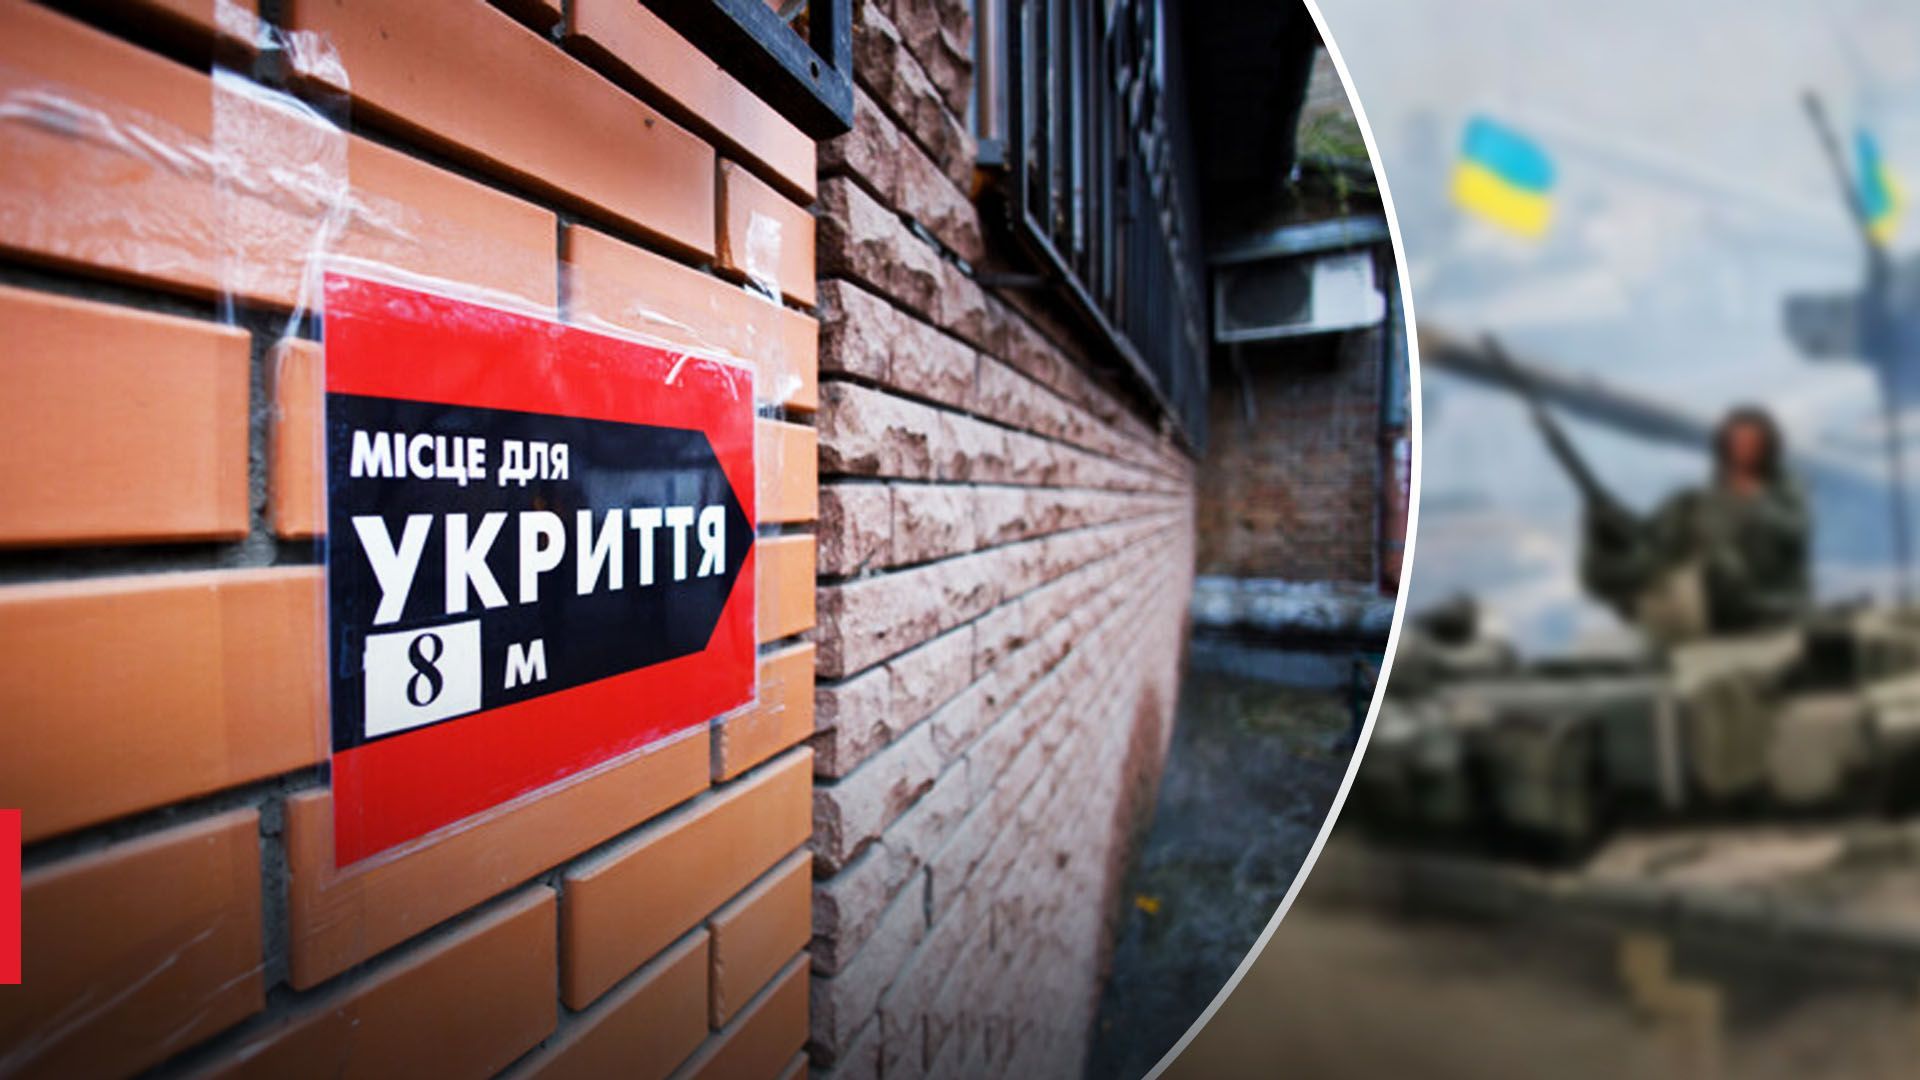 Проблема с укрытиями в Киеве - результат проверки - неудовлетворительный - запустили чат-бот - 24 Канал